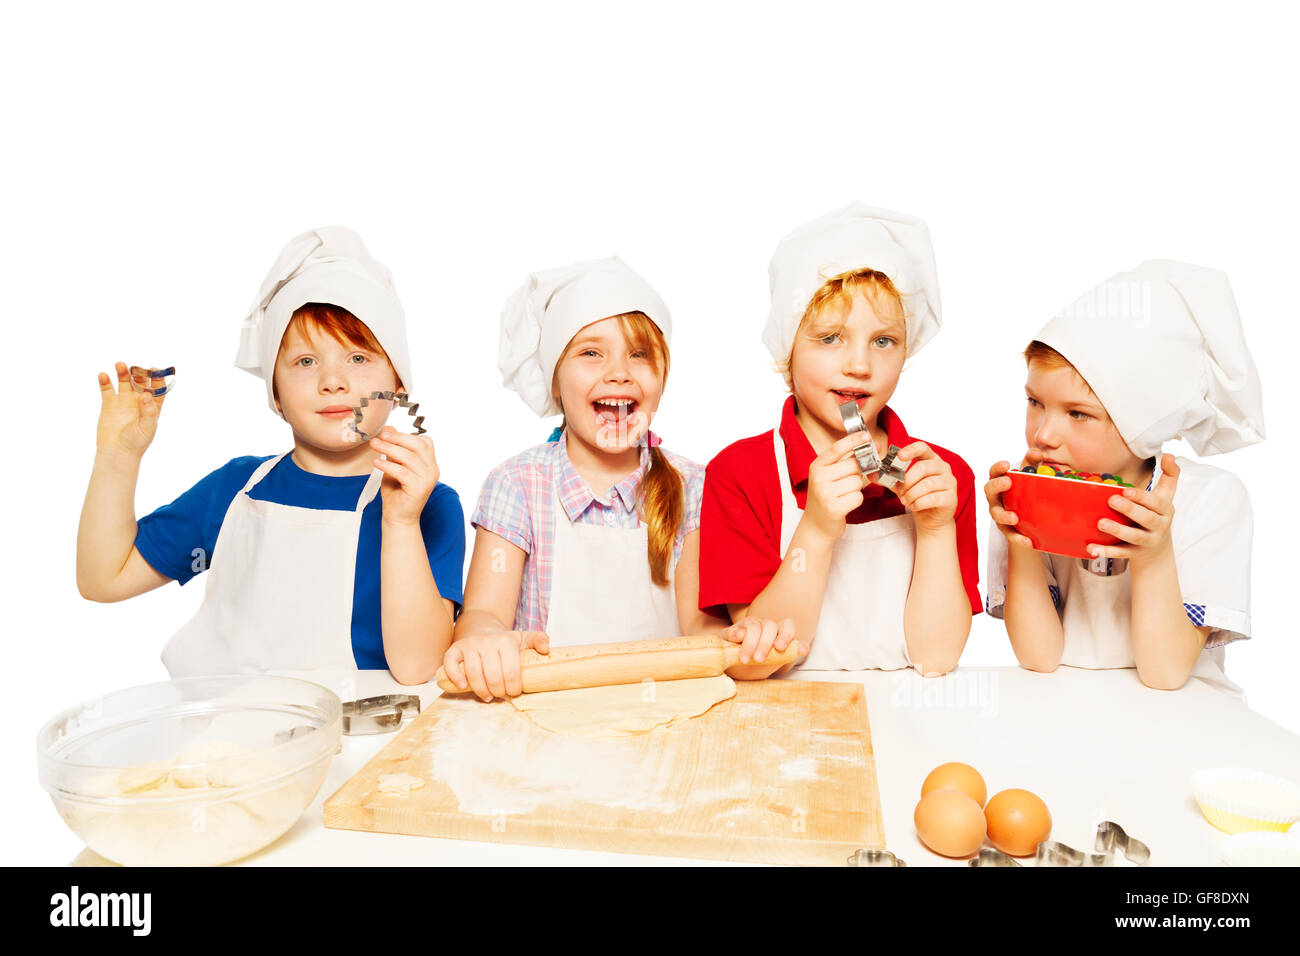 Giovani fornai rendere lâ impasto con cucina-stuff Foto Stock